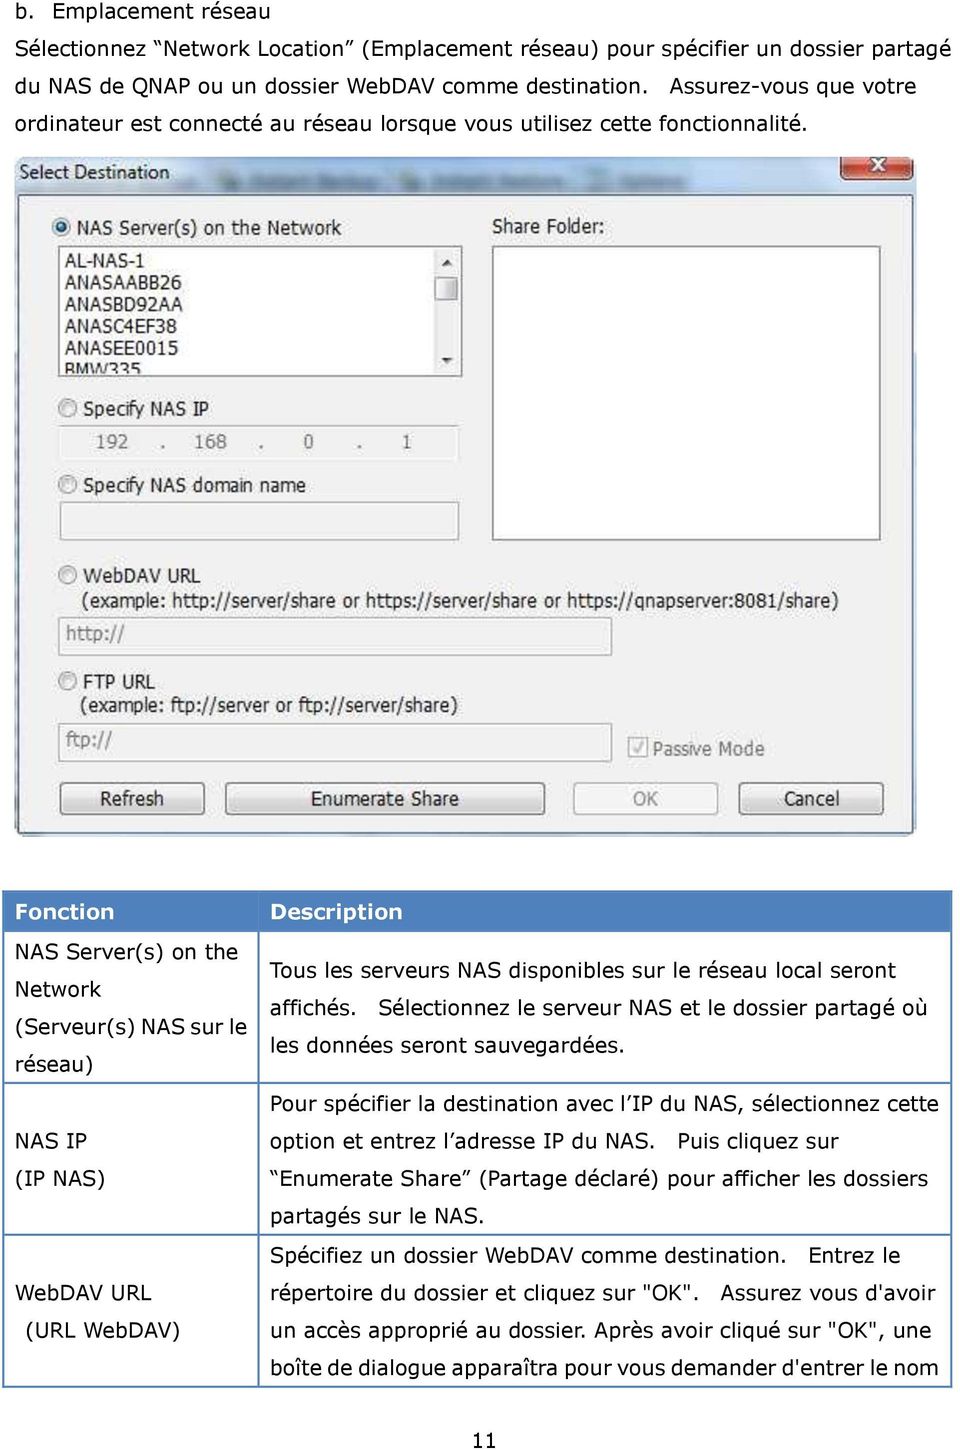 Fonction NAS Server(s) on the Network (Serveur(s) NAS sur le réseau) NAS IP (IP NAS) WebDAV URL (URL WebDAV) Description Tous les serveurs NAS disponibles sur le réseau local seront affichés.